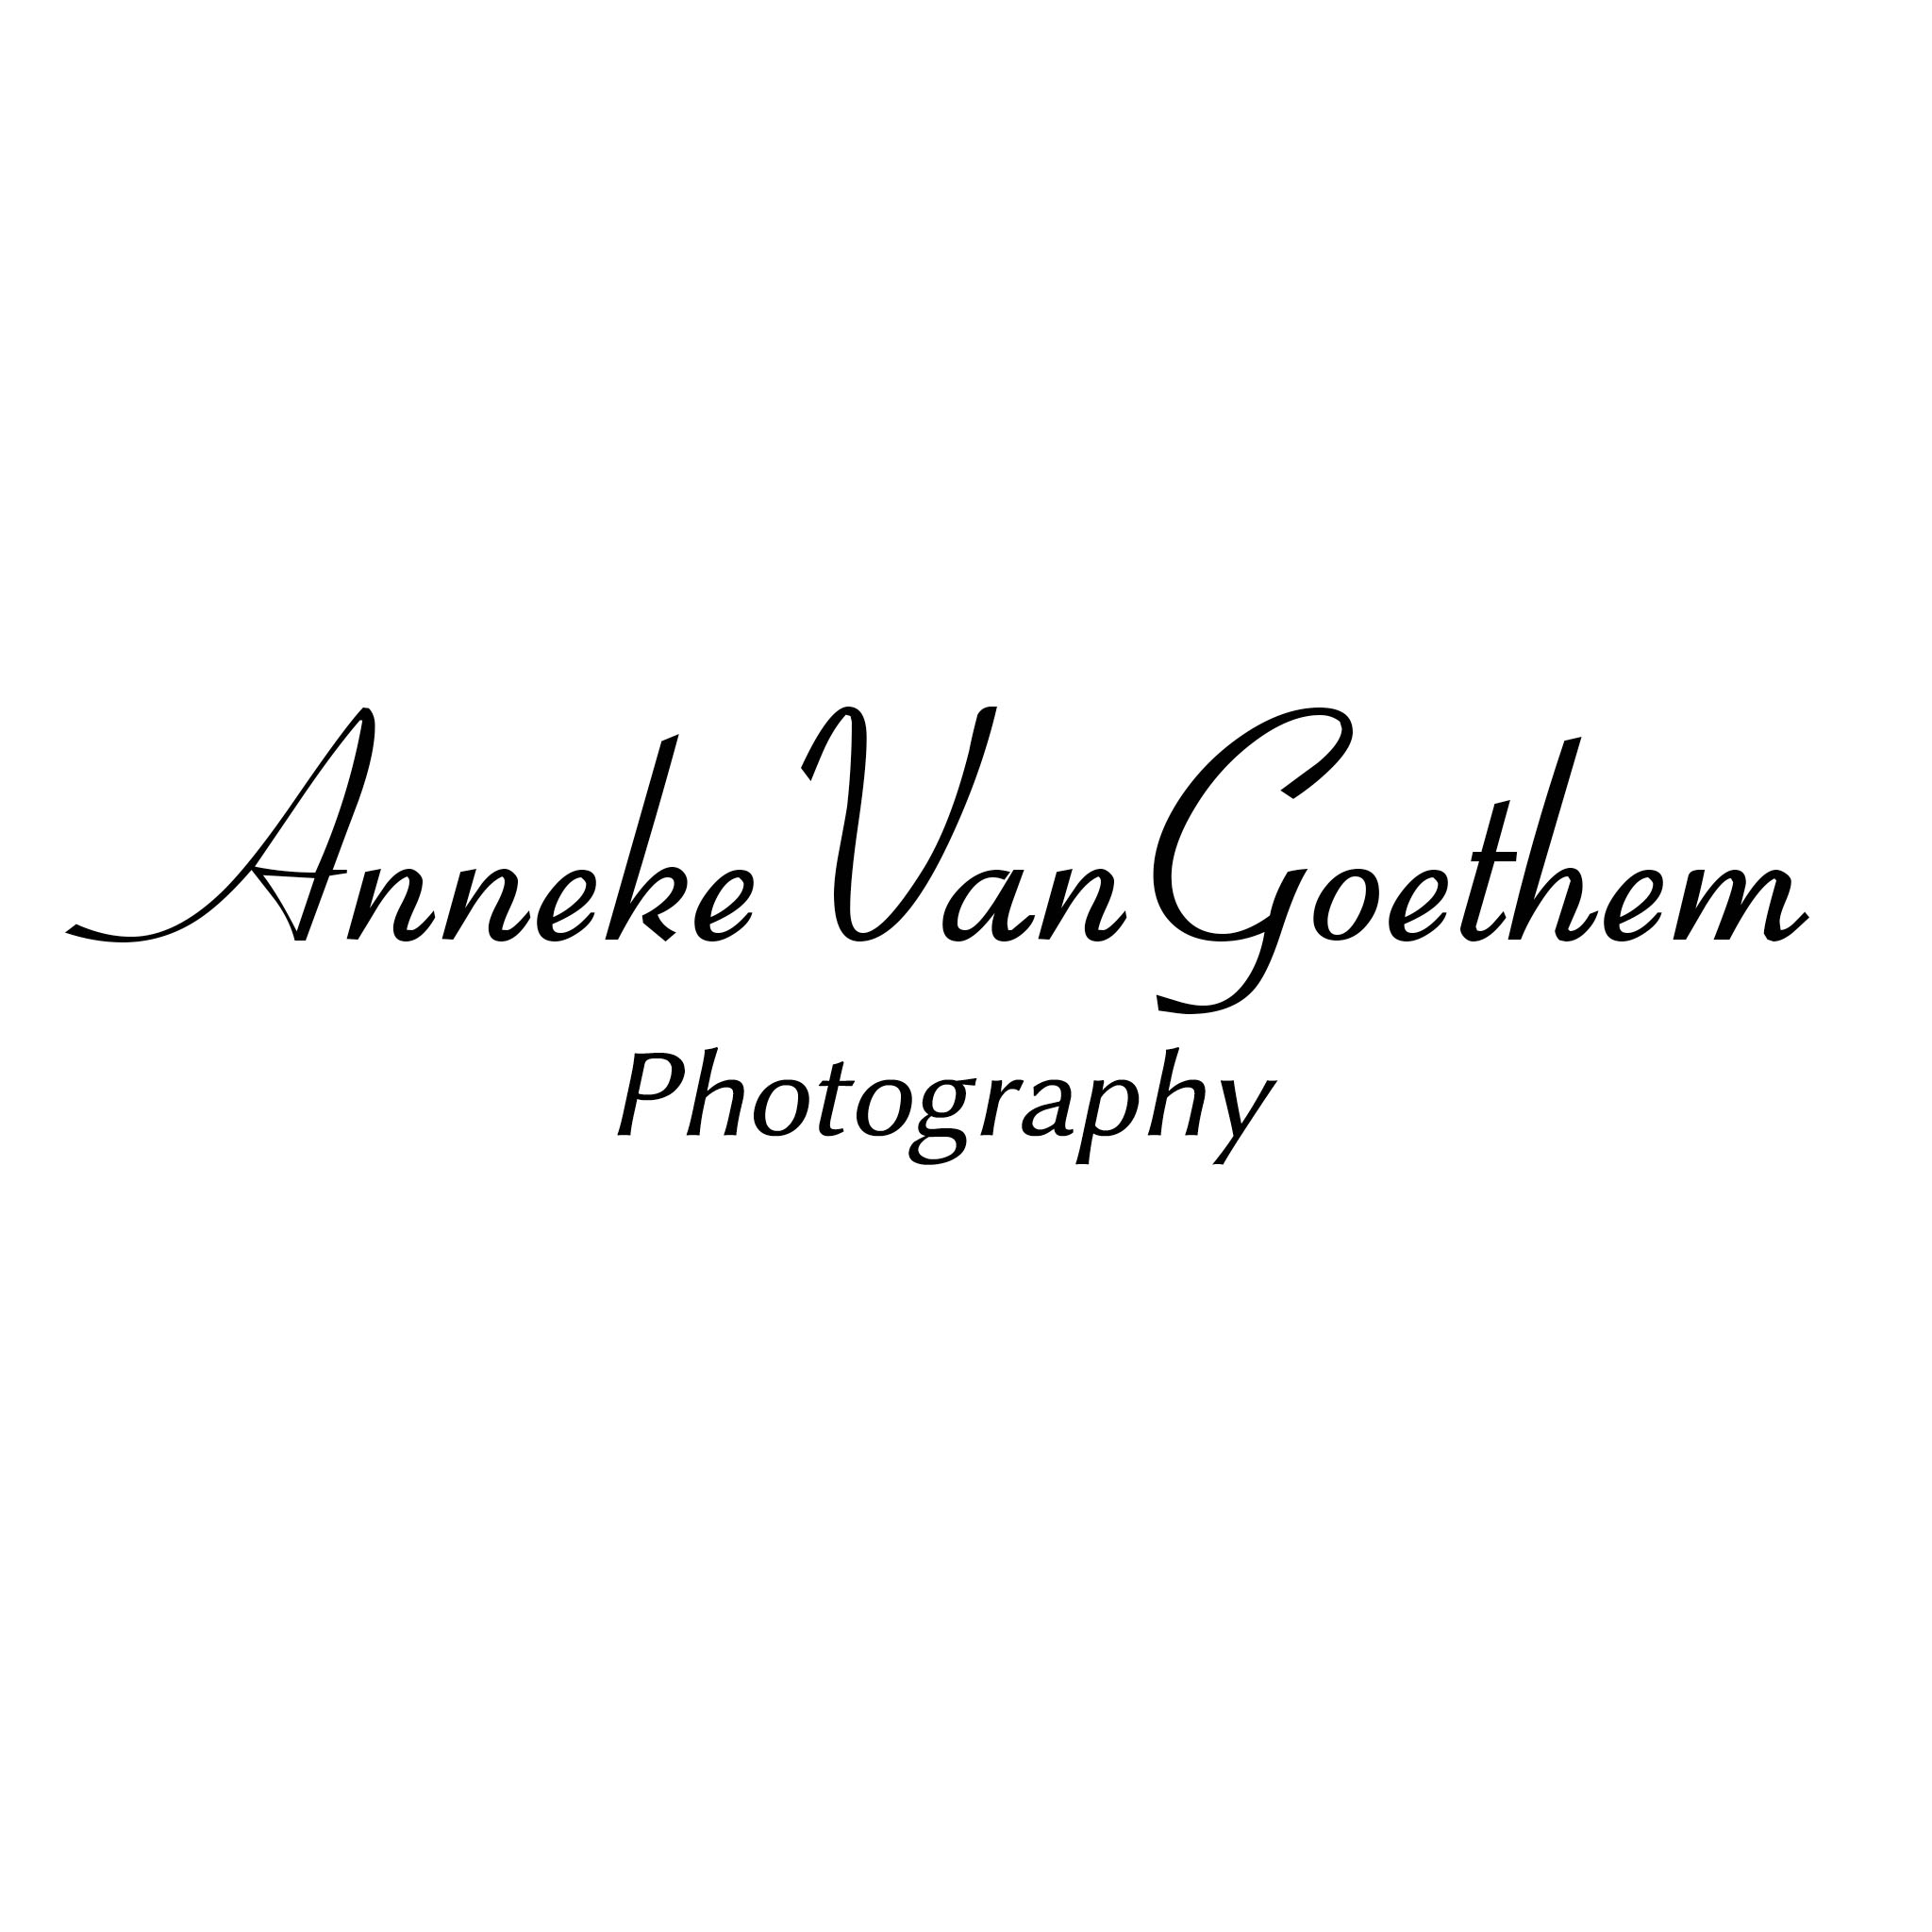 fotografen Eine Anneke Van Goethem Photography